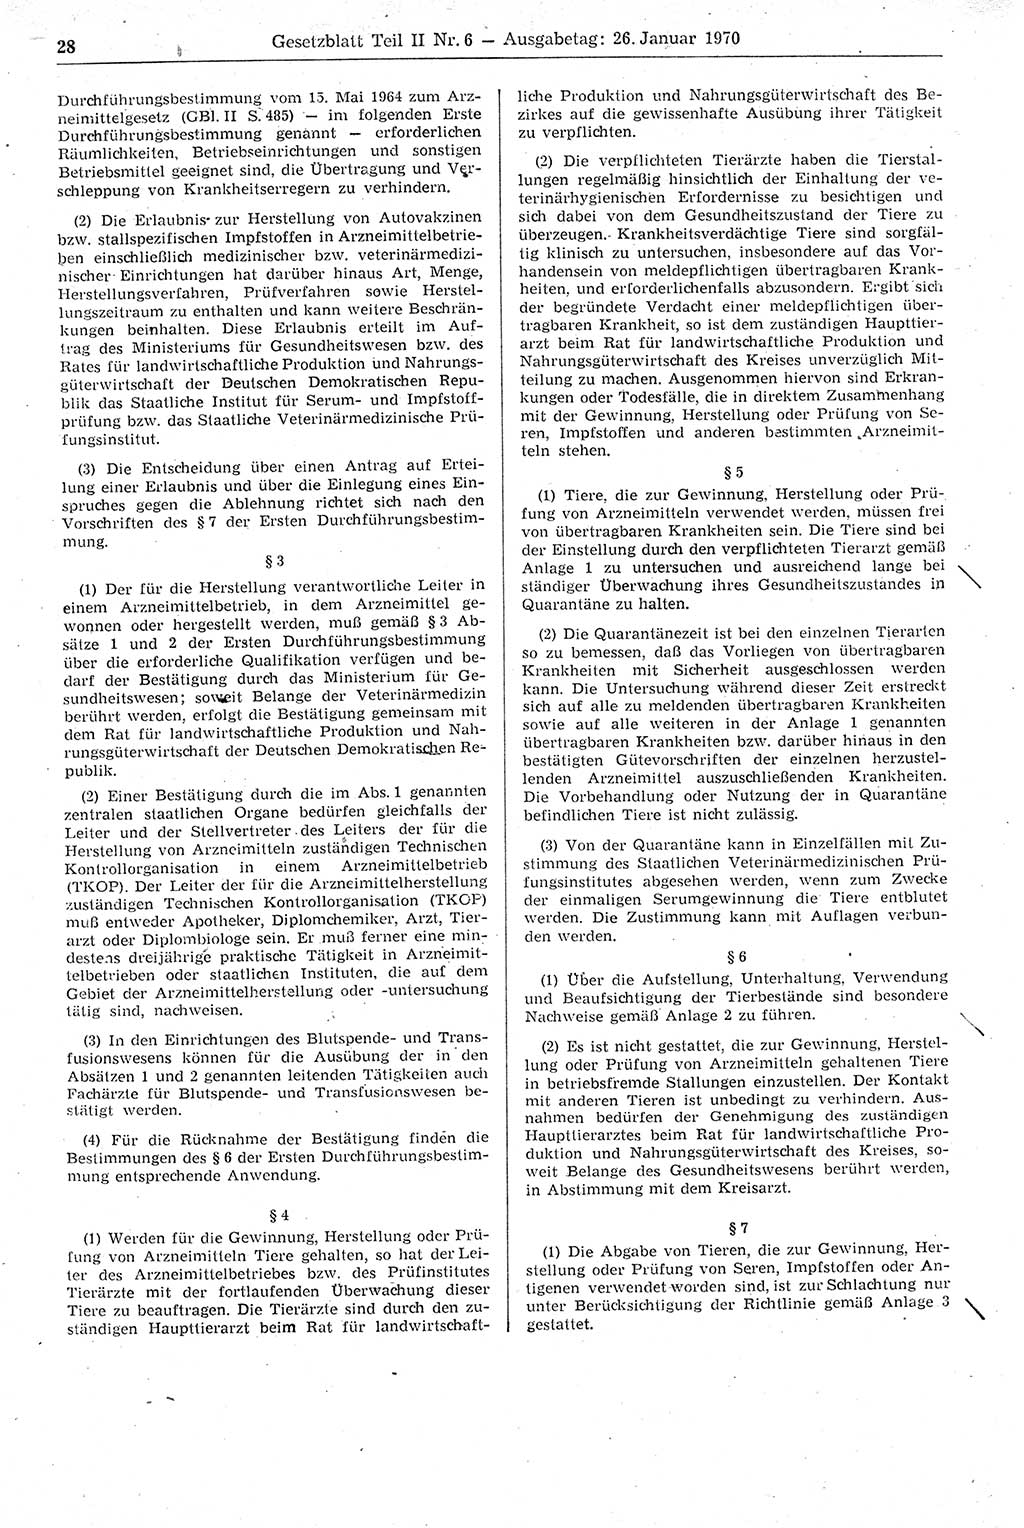 Gesetzblatt (GBl.) der Deutschen Demokratischen Republik (DDR) Teil ⅠⅠ 1970, Seite 28 (GBl. DDR ⅠⅠ 1970, S. 28)